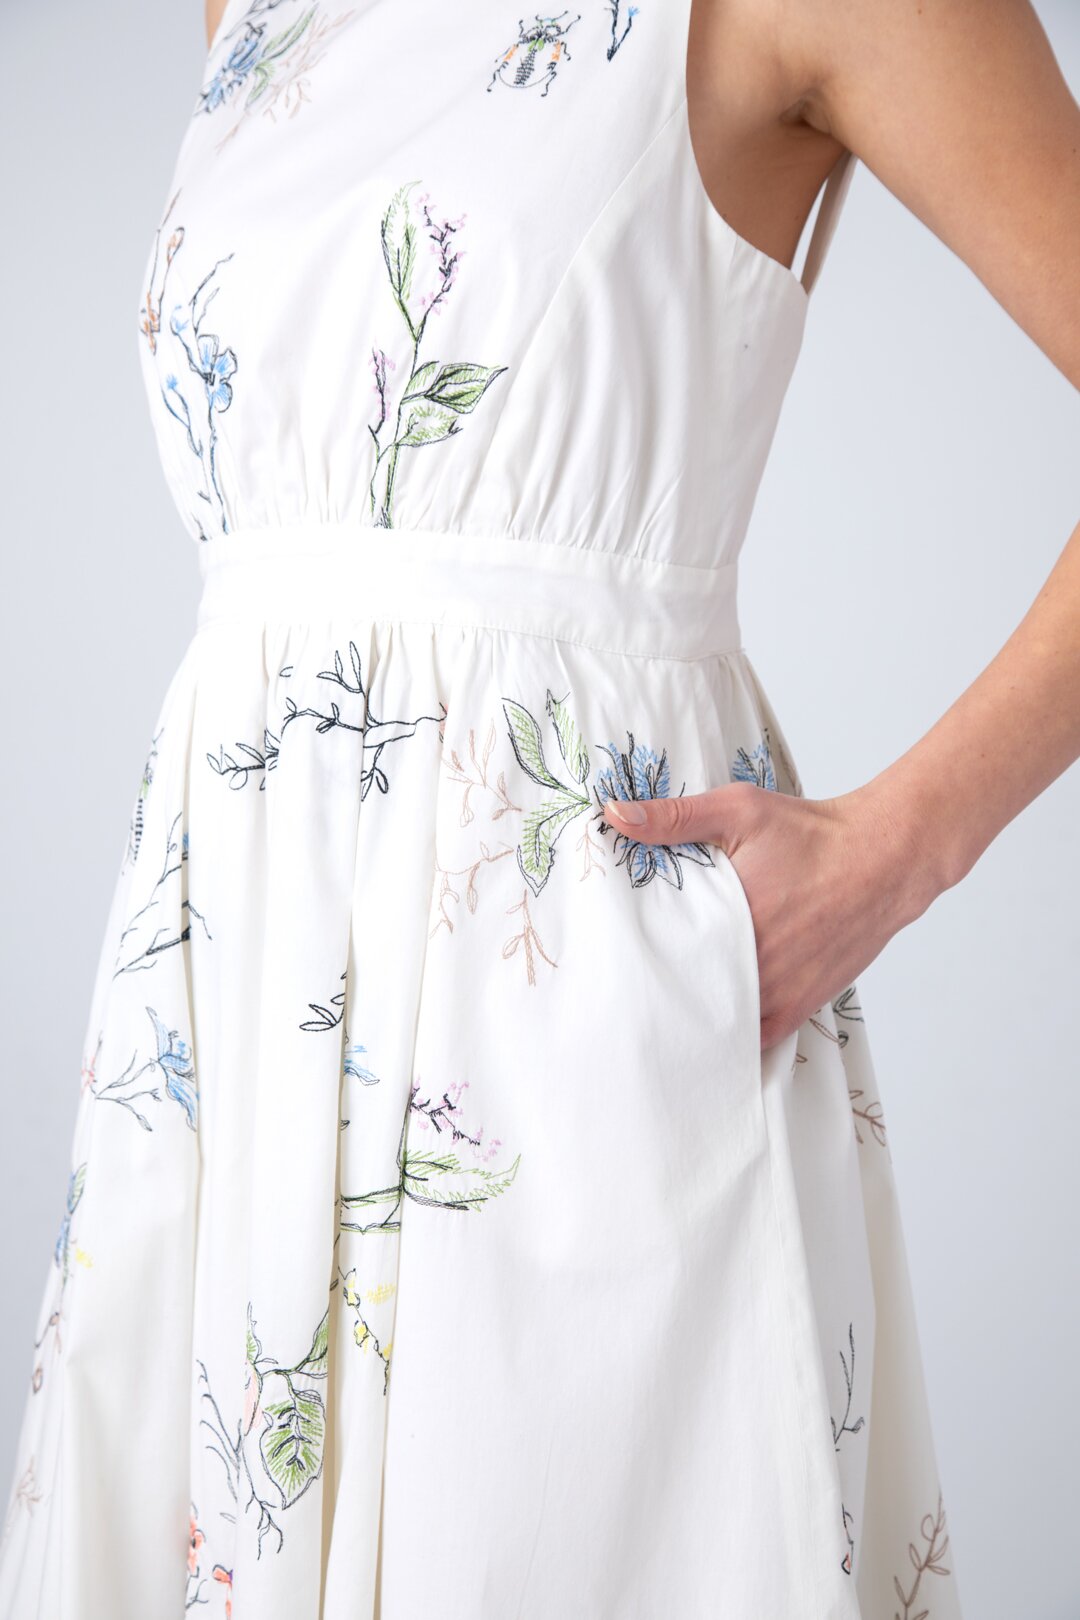 Embroidered Dress, Herbarium Motif